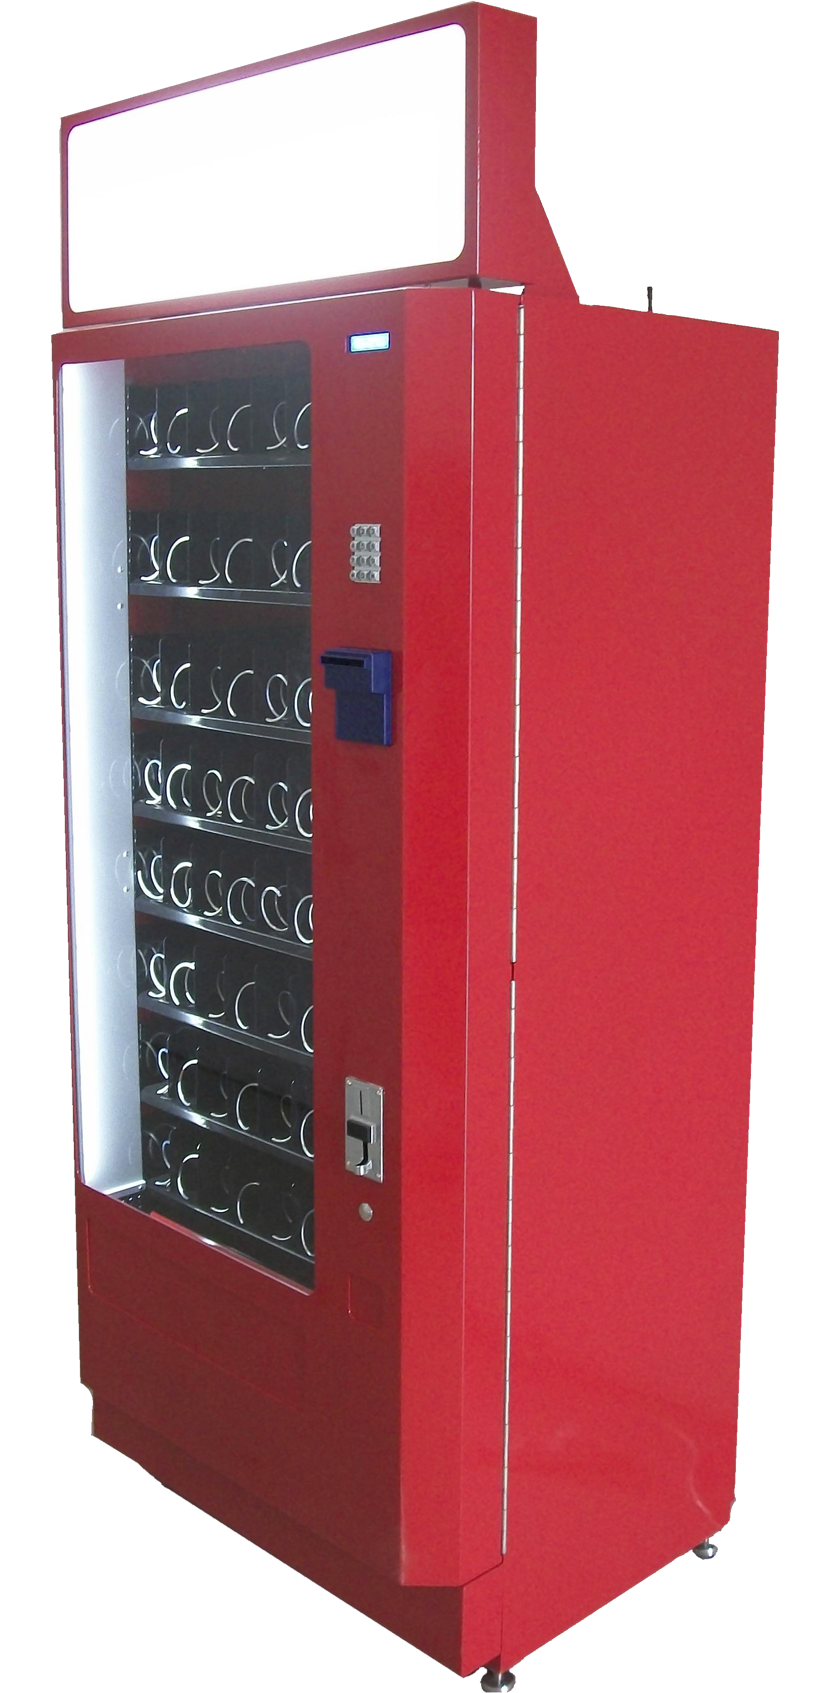 Снековый торговый автомат IVT-S64 напольного исполнения для продажи 64 видов товаров